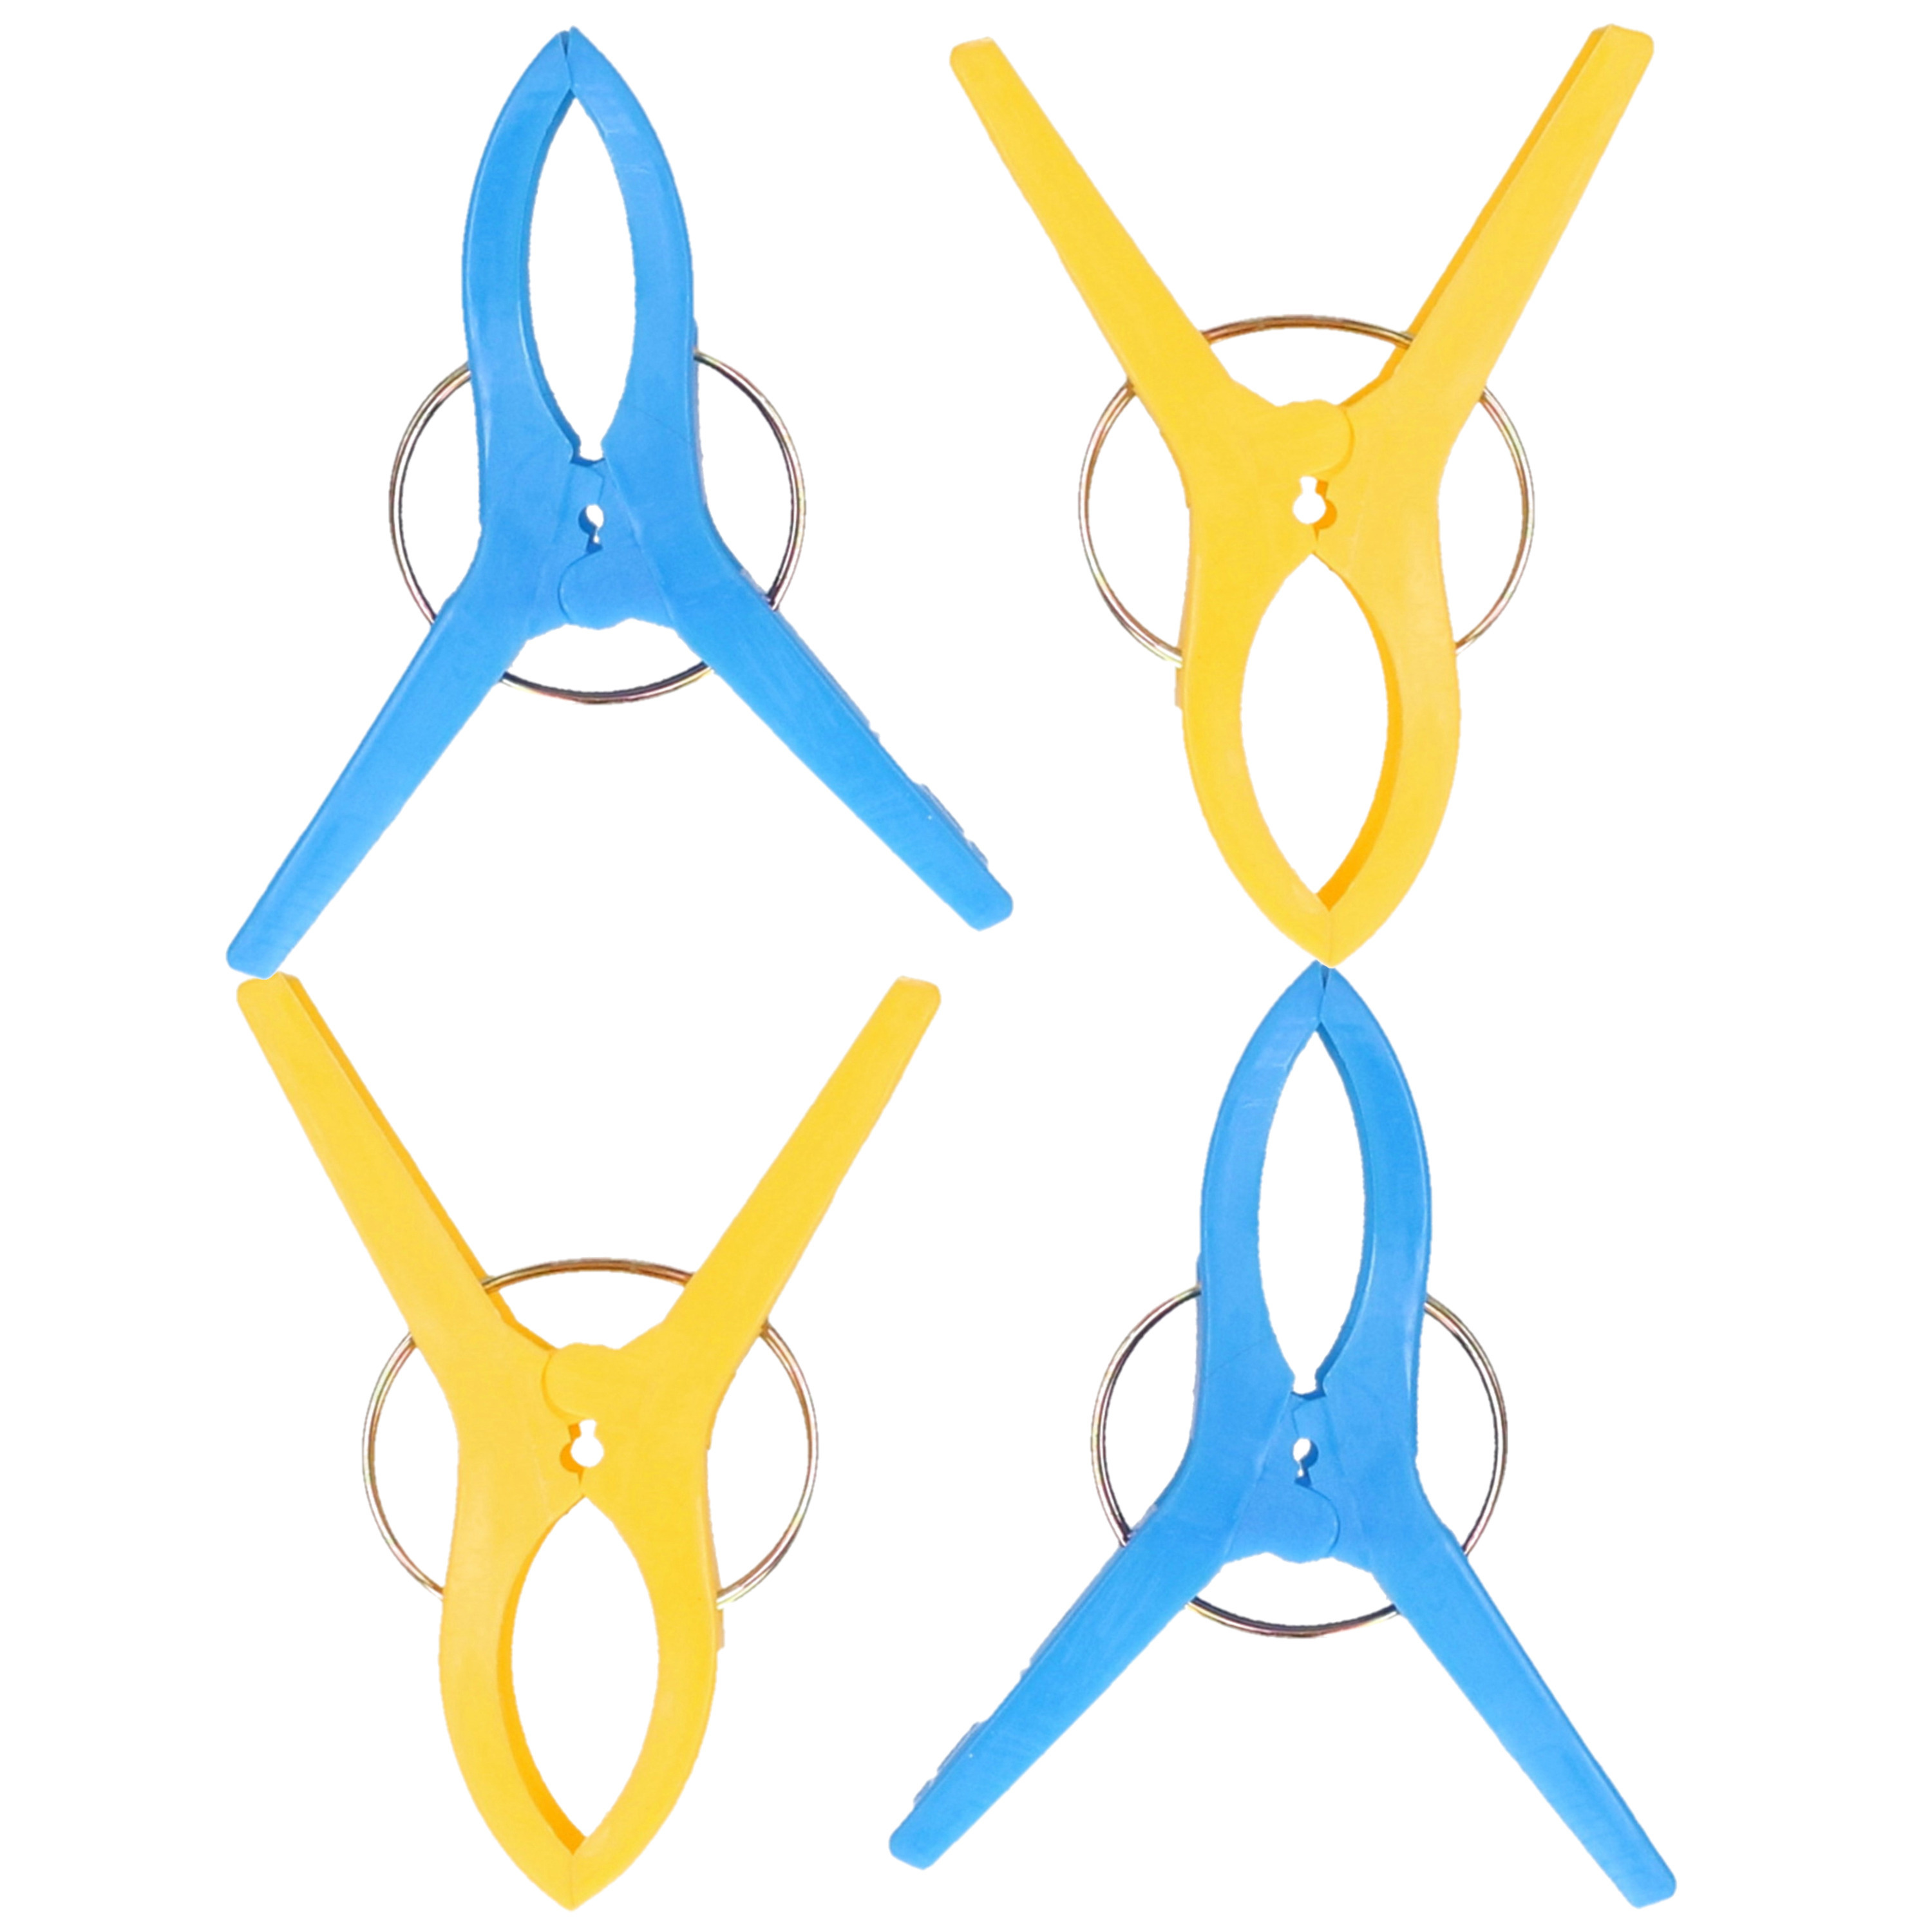 Handdoekknijpers XL 6x blauw-geel kunststof 12 cm wasknijpers